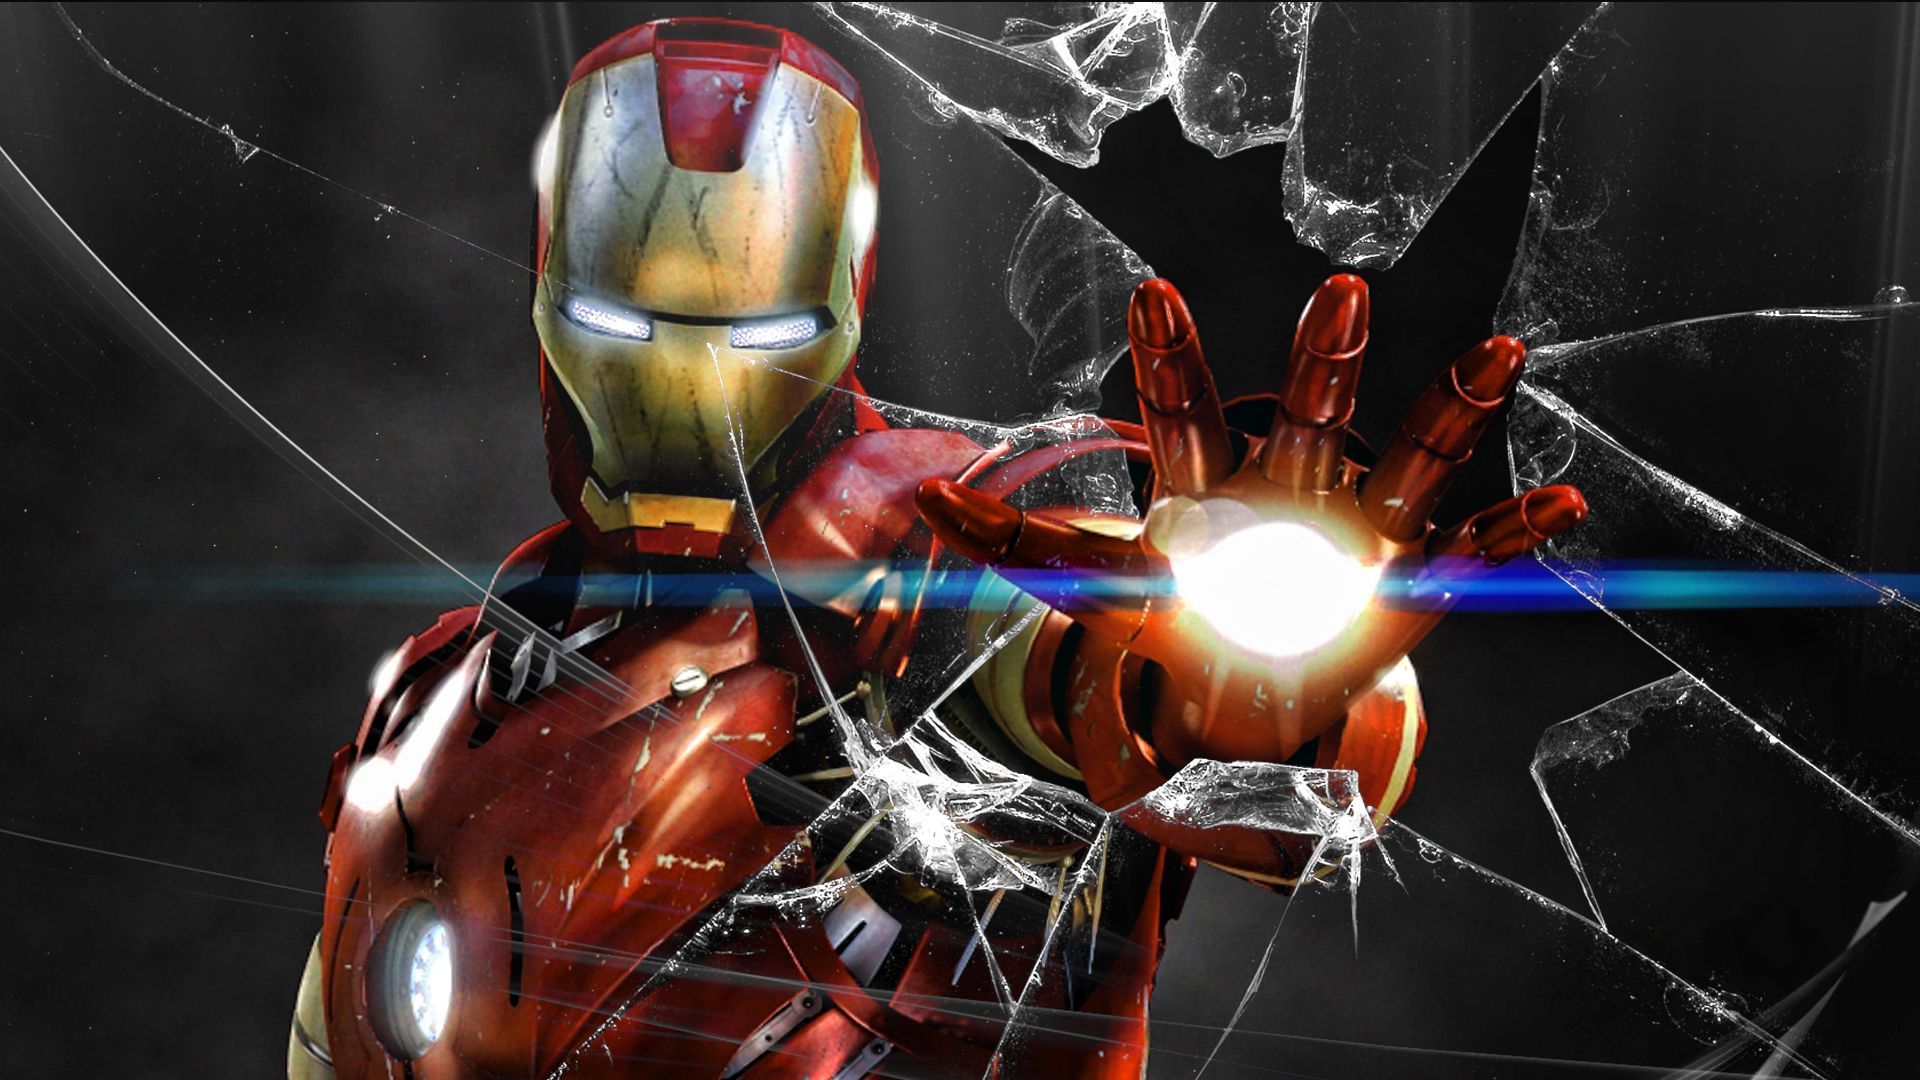 Iron Man HD Wallpapers cung cấp cho bạn những hình nền đẹp nhất của anh chàng siêu nhân Iron Man. Với chất lượng hình ảnh sắc nét HD, bạn sẽ có cơ hội ngắm nhìn toàn bộ đường nét bộ giáp điển trai của Iron Man và chiêm ngưỡng thành phố đầy sức sống trong bộ phim siêu anh hùng đình đám này.